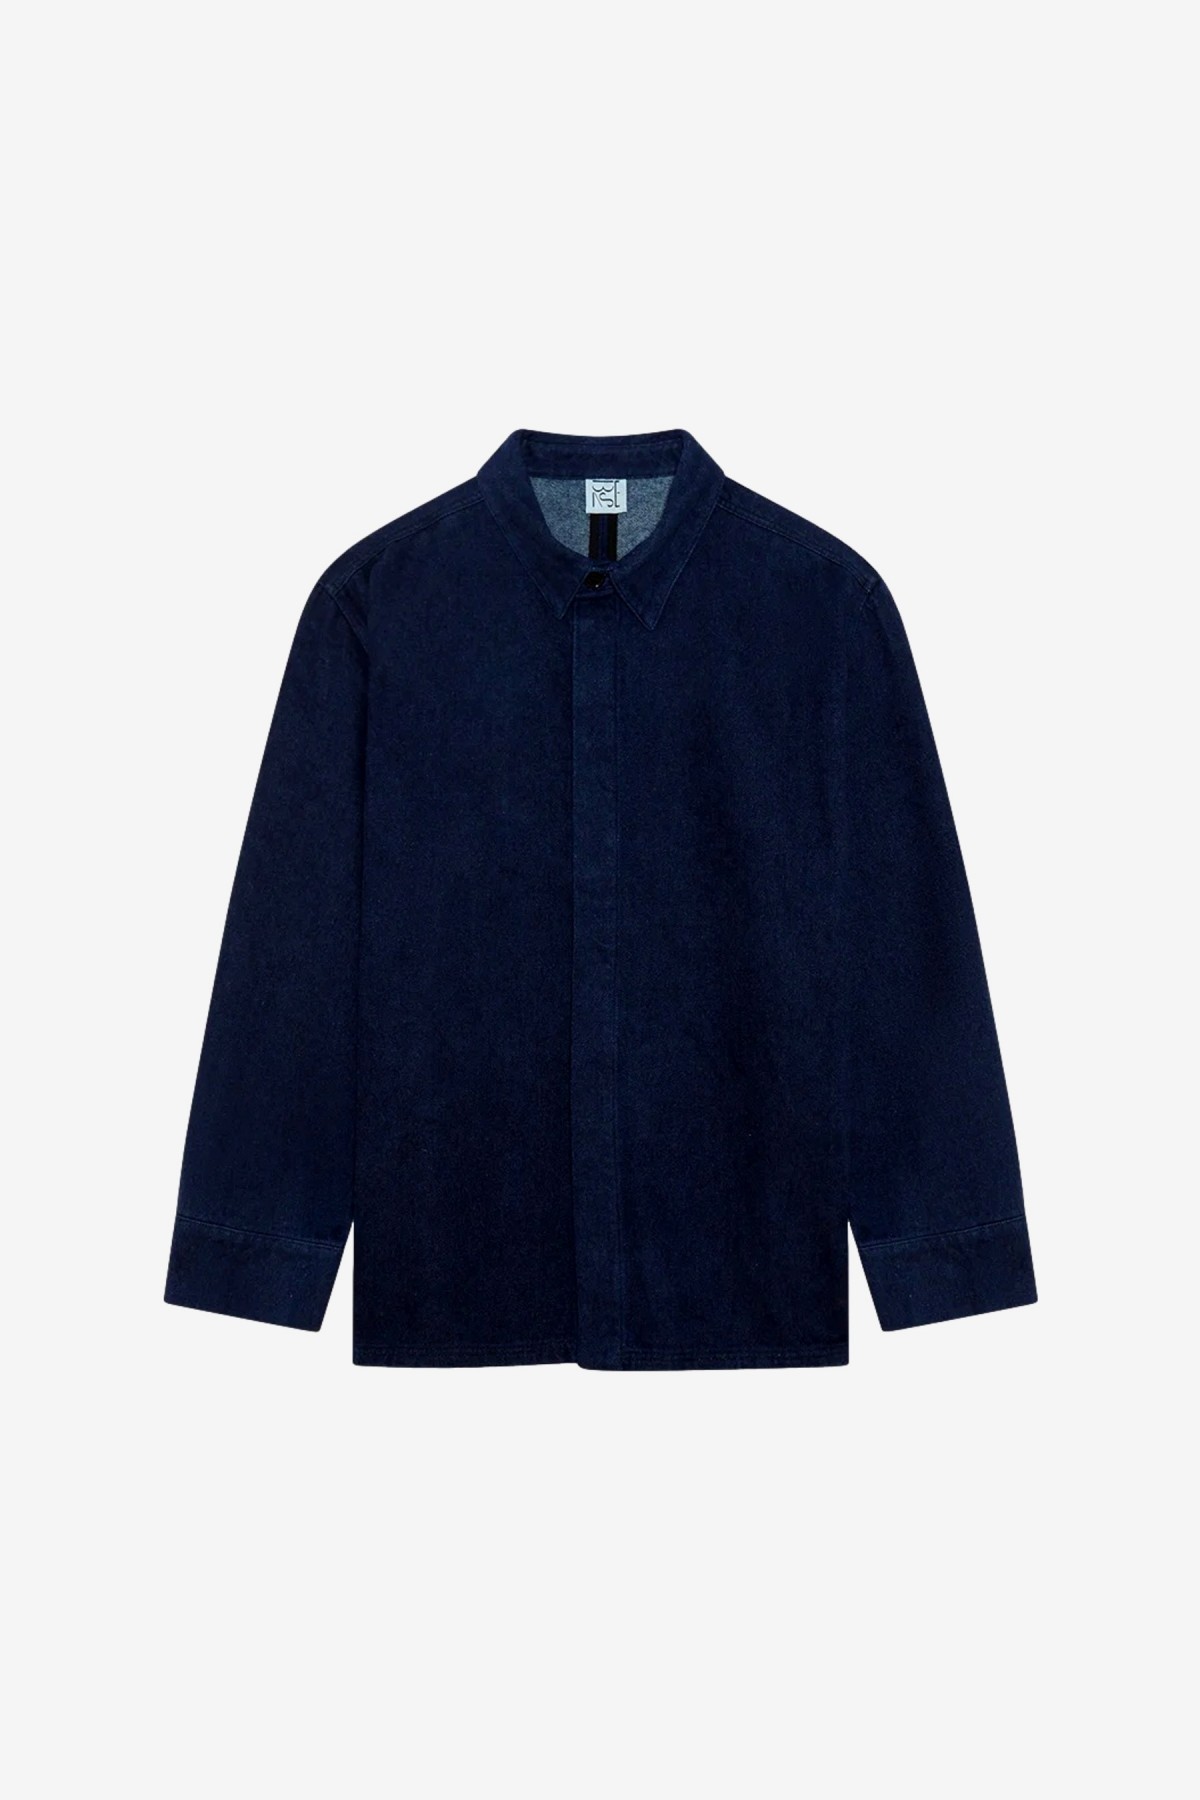 Baserange Indre Jacket in Dark Blue